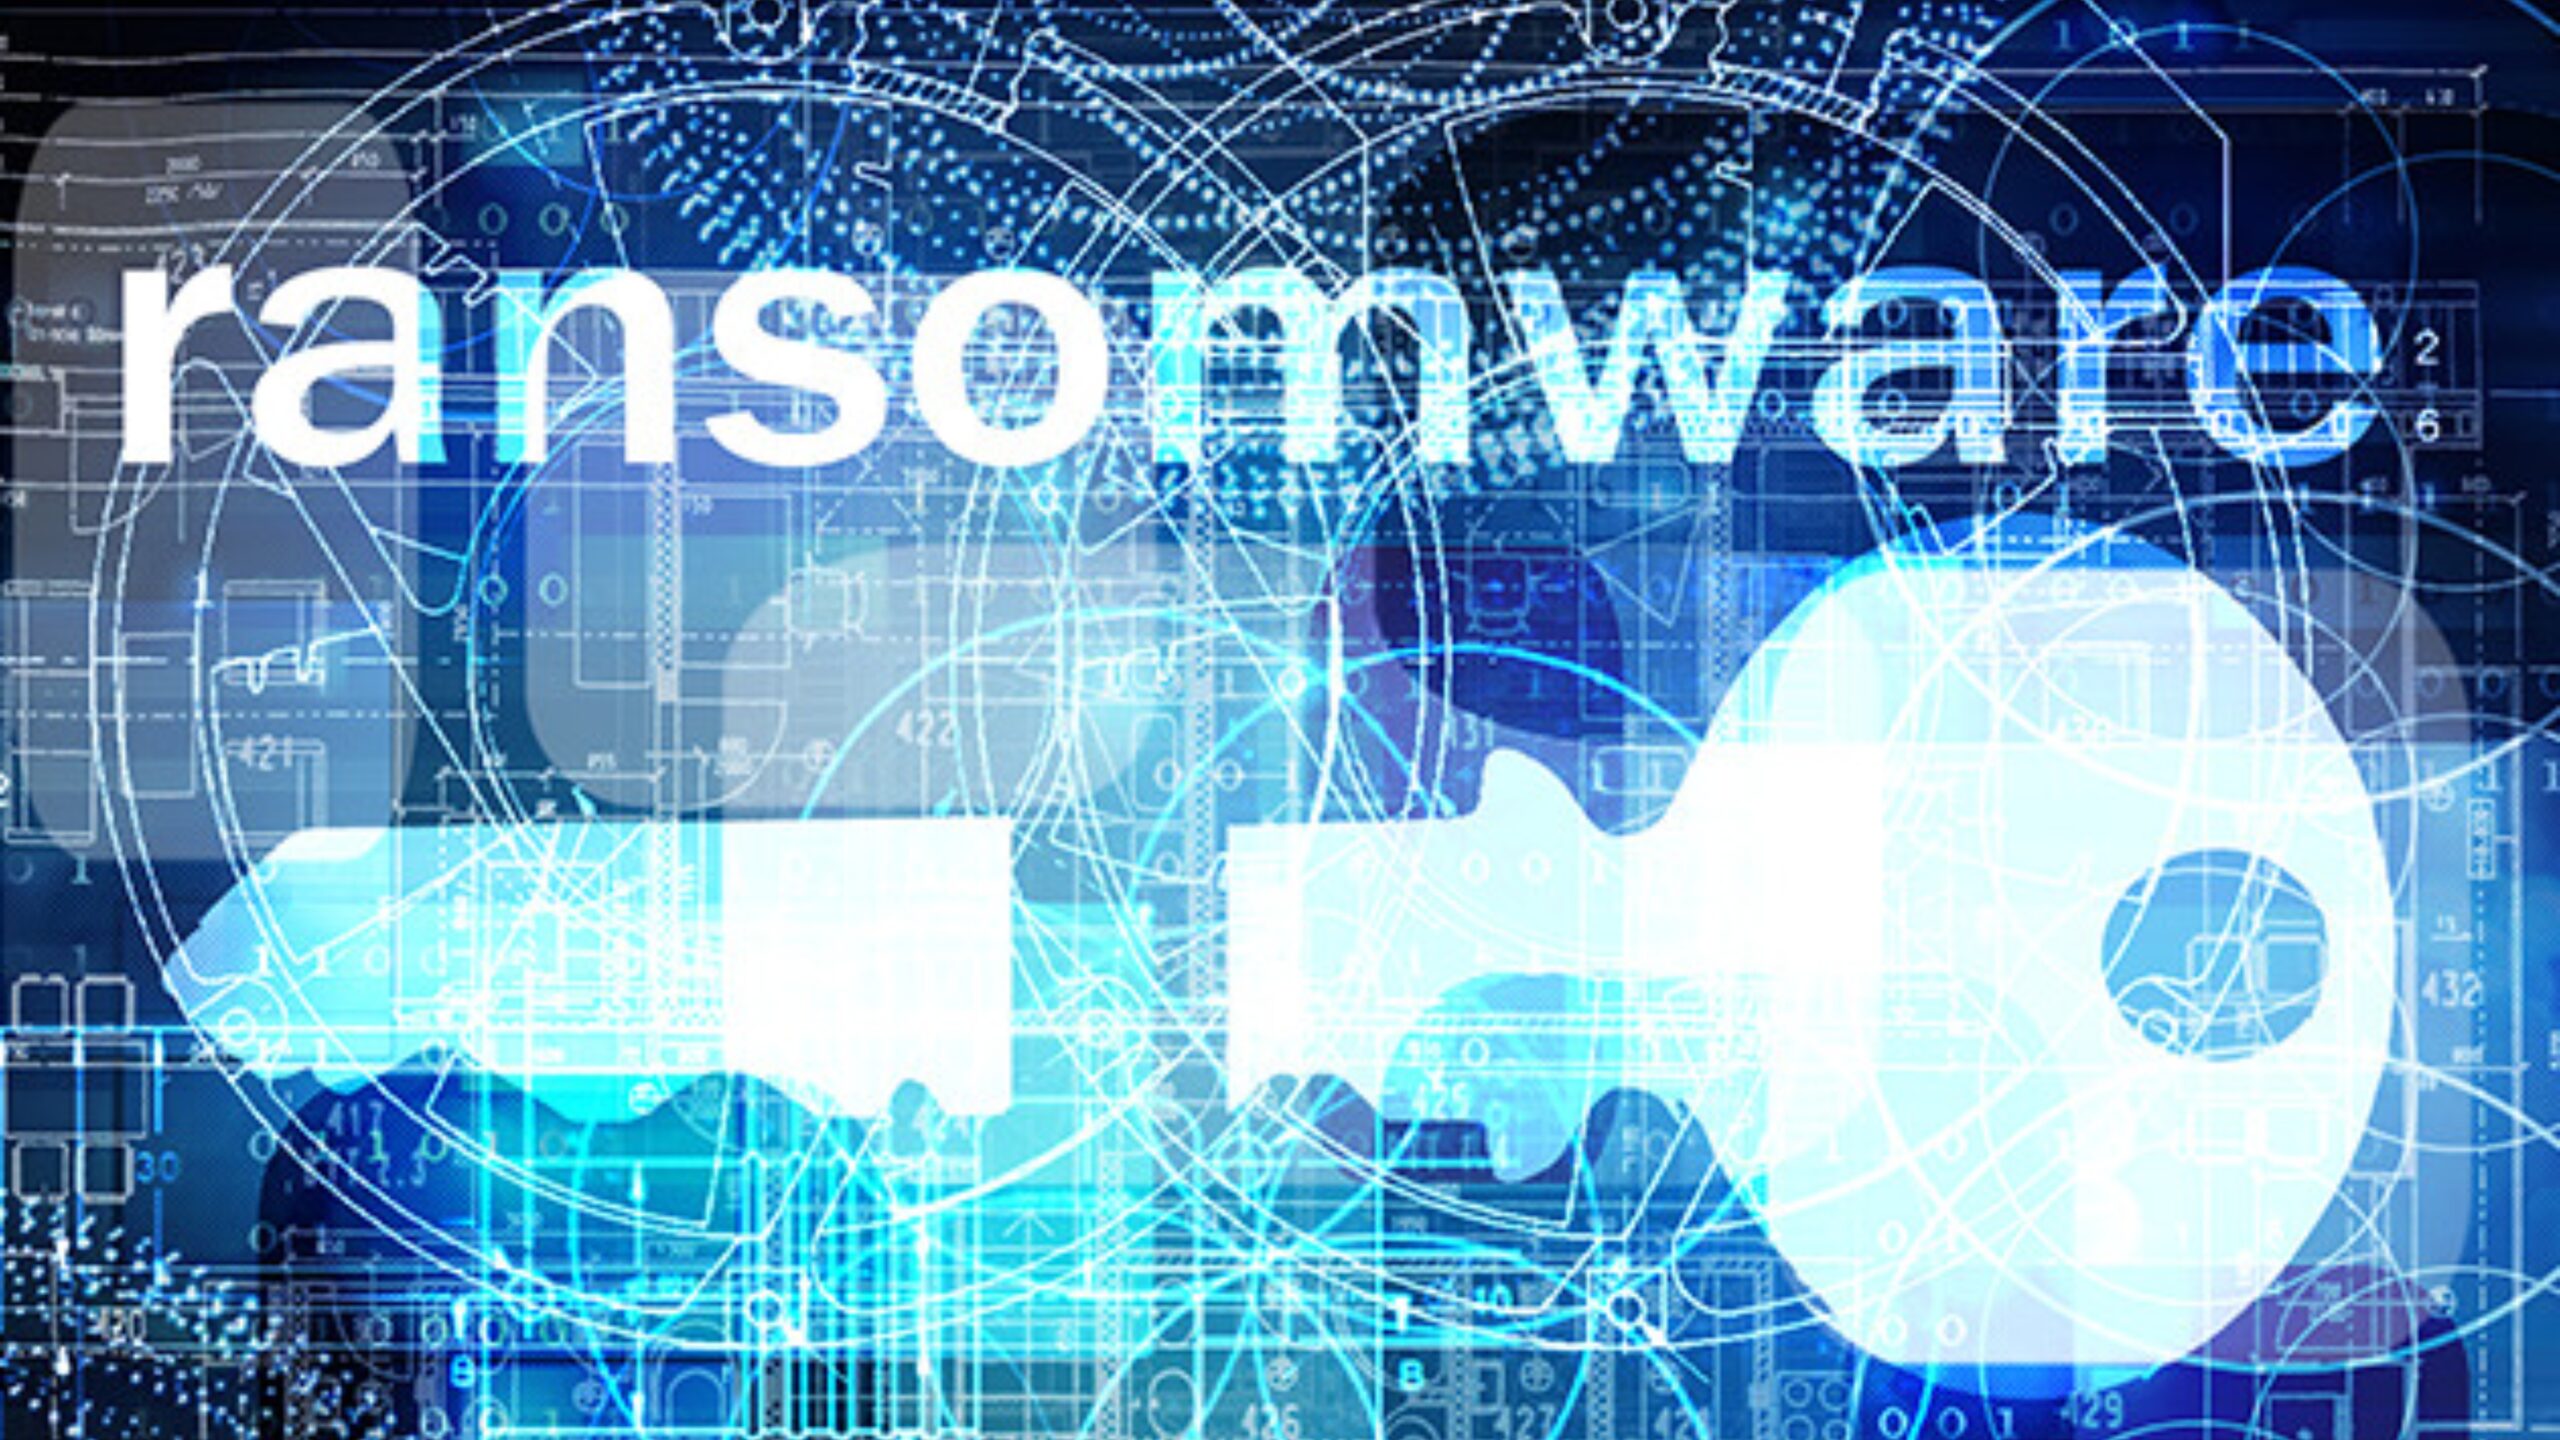 grupo-de-ransomware-por-tras-de-ataques-contra-organizacoes-em-71-paises-e-desmontado